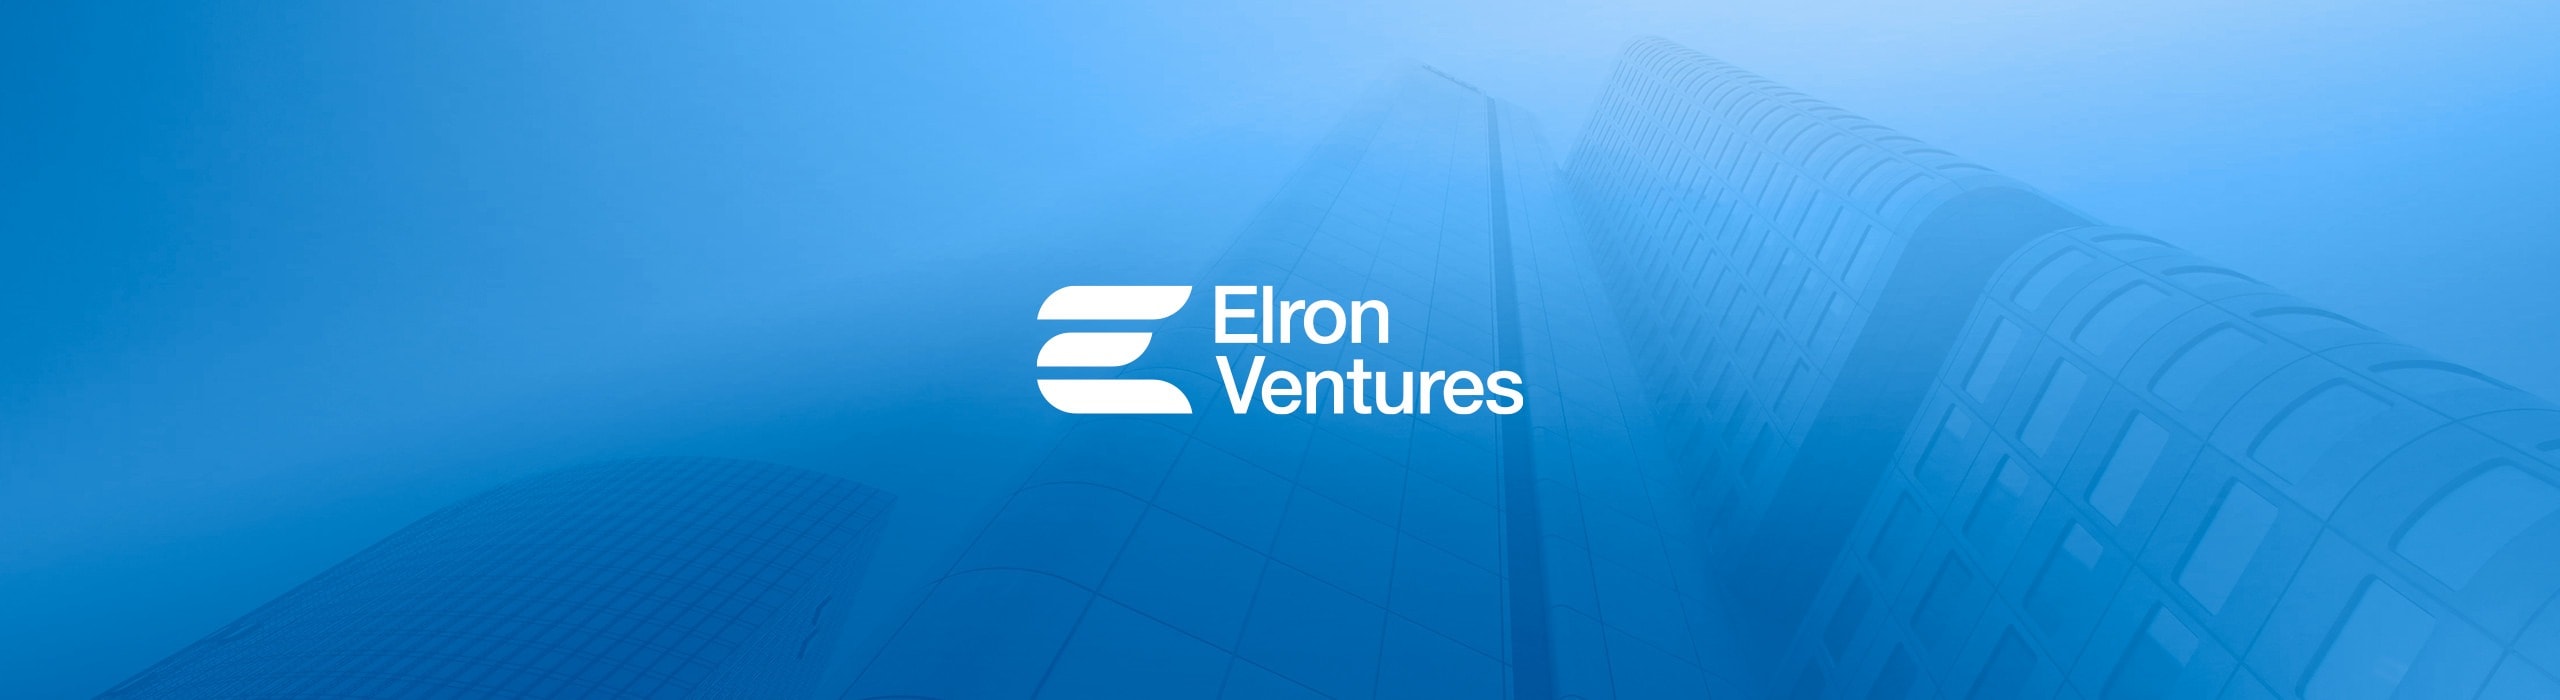 Elron Ventures - elron_01 - Natie Branding Agency